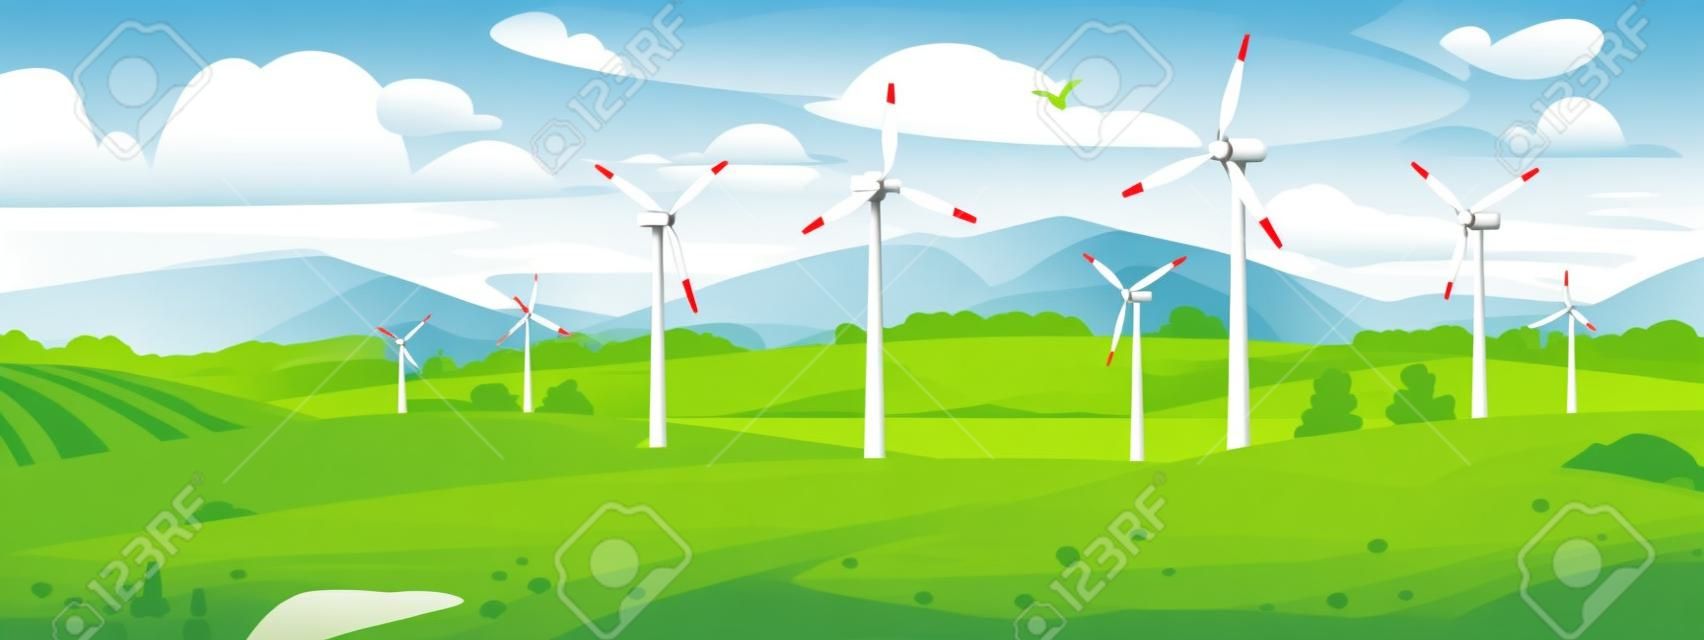 Um parque eólico ou usina de energia no campo perto do lago e das montanhas no verão. Turbinas eólicas de uma usina geram eletricidade ecológica e sustentável. Ilustração vetorial em estilo cartoon.